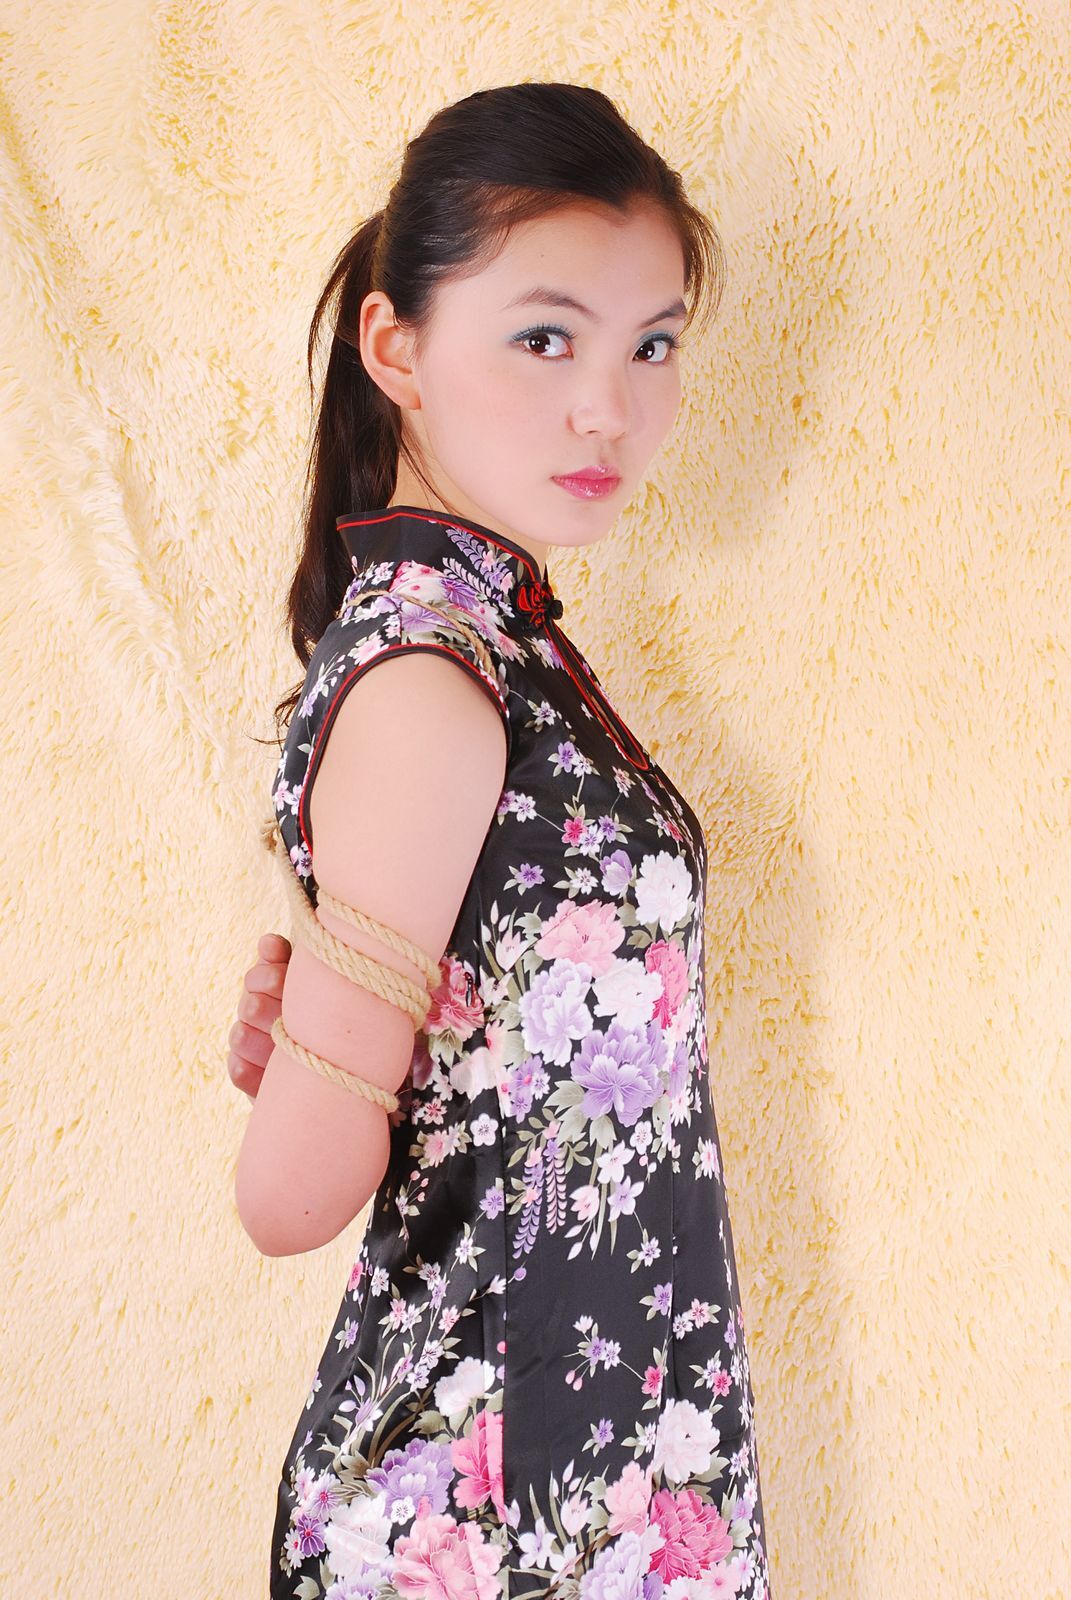 [shenyiyuan] 2010.04.08 no.008 model Xinyuan, Tiantian